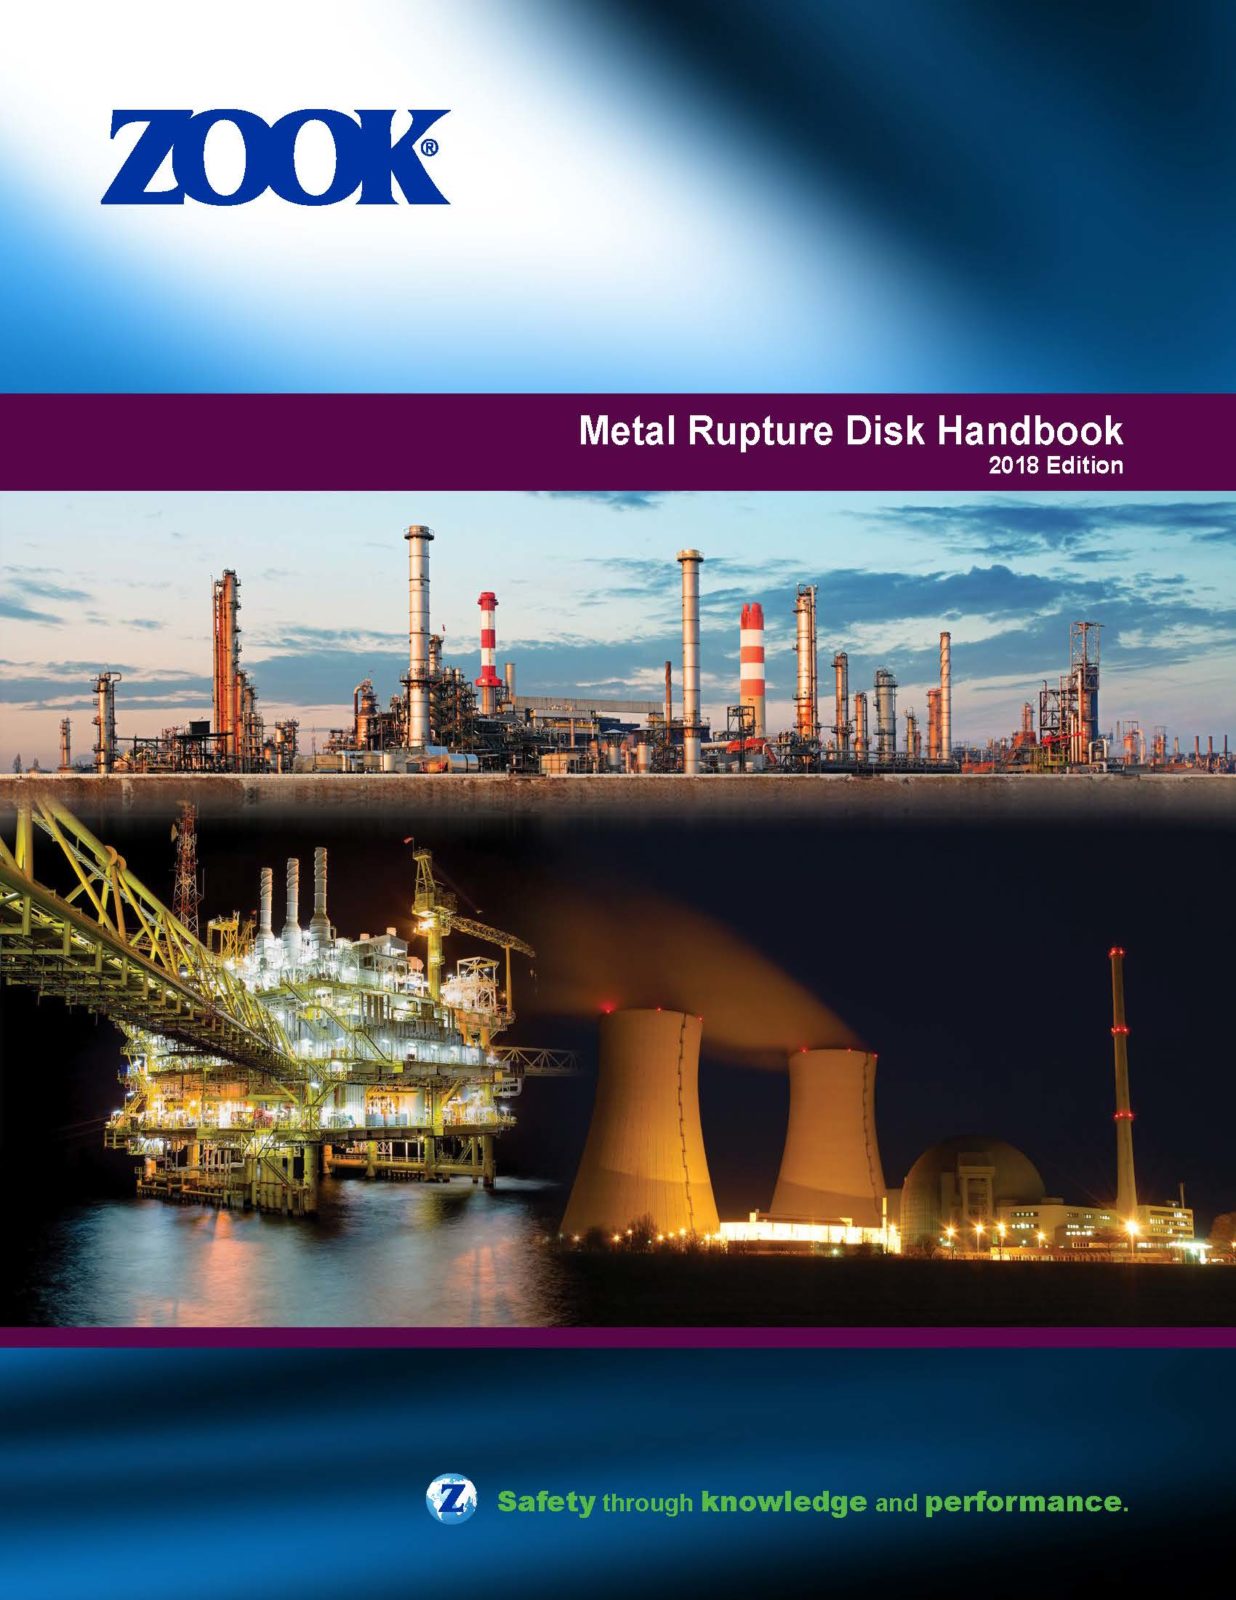 ZOOK Metal Rupture Disk Public Handbook 2018